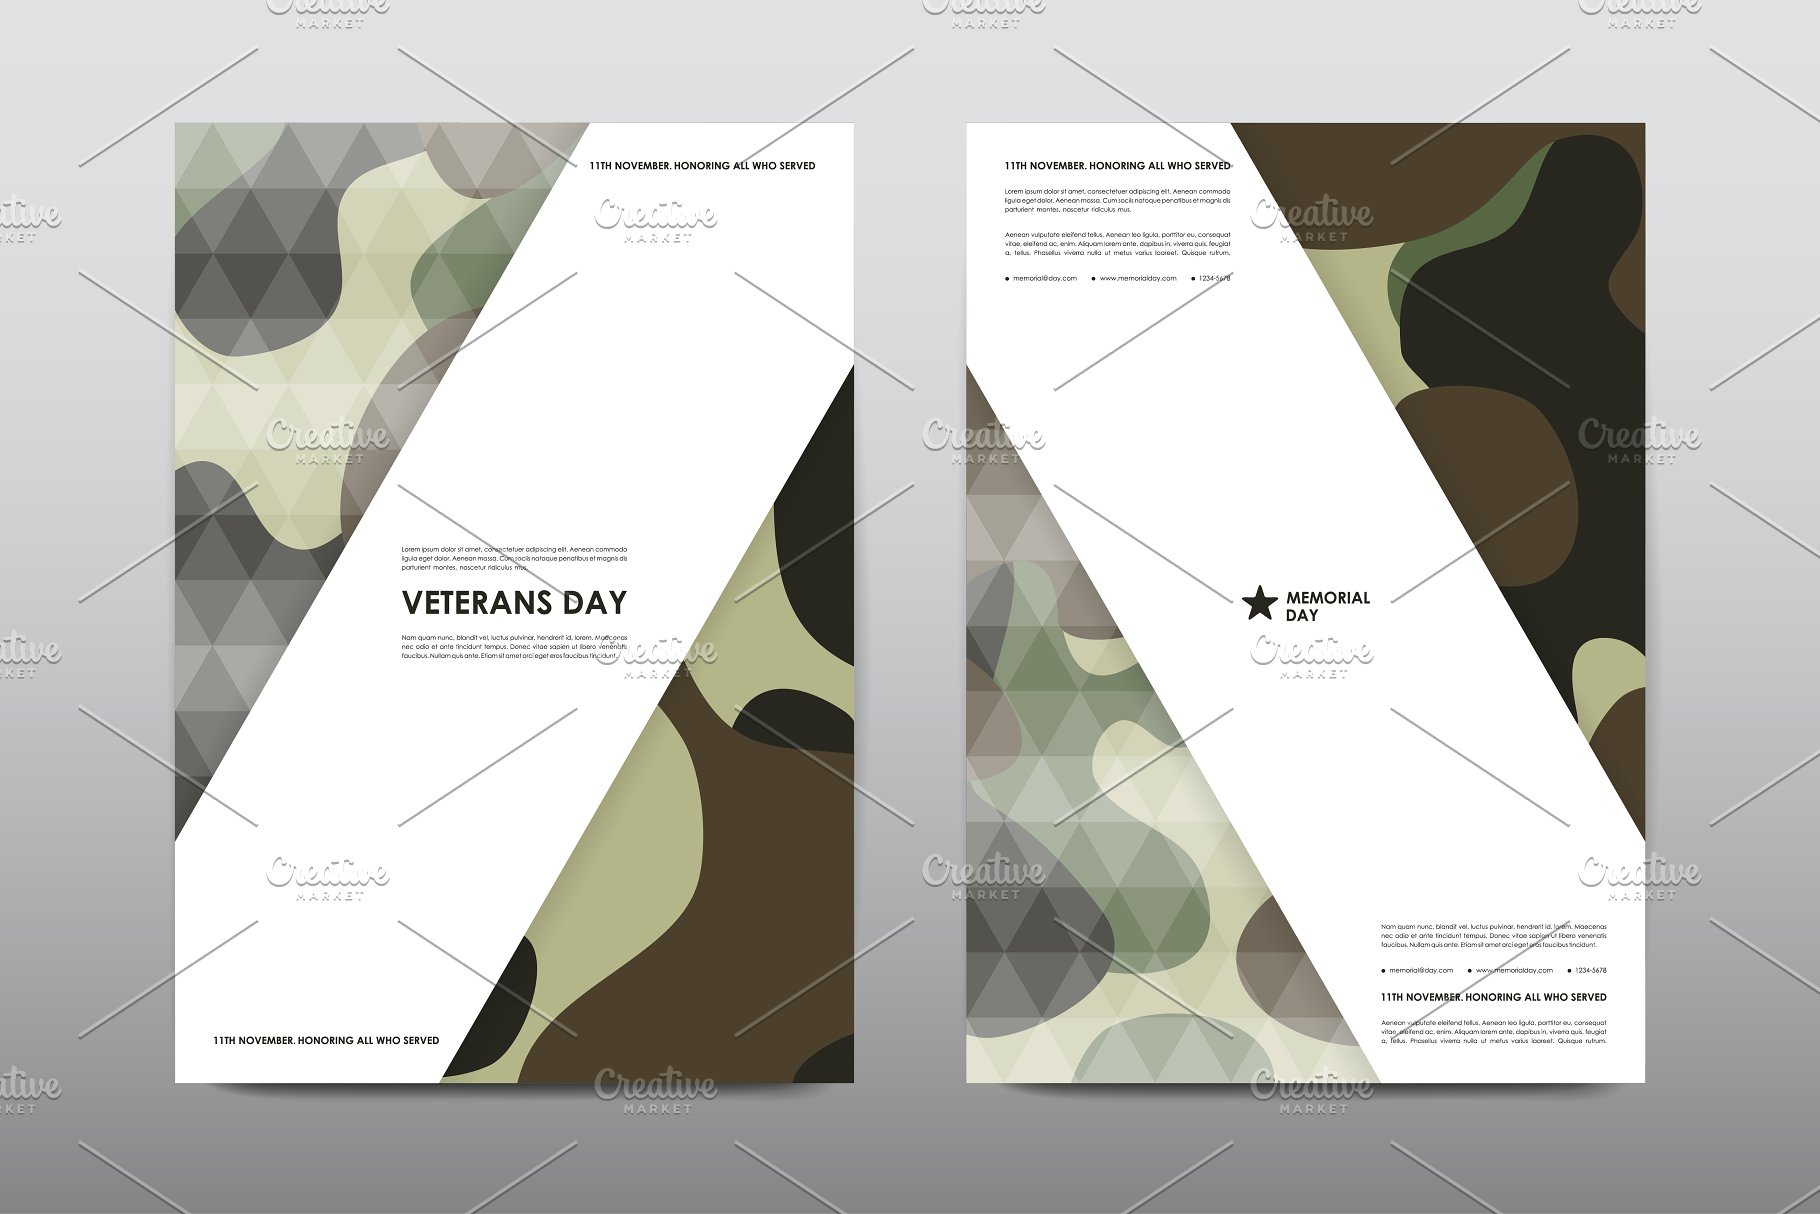 40+老兵节军人宣传小册模板 Veteran’s Day Brochures Bundle插图(12)